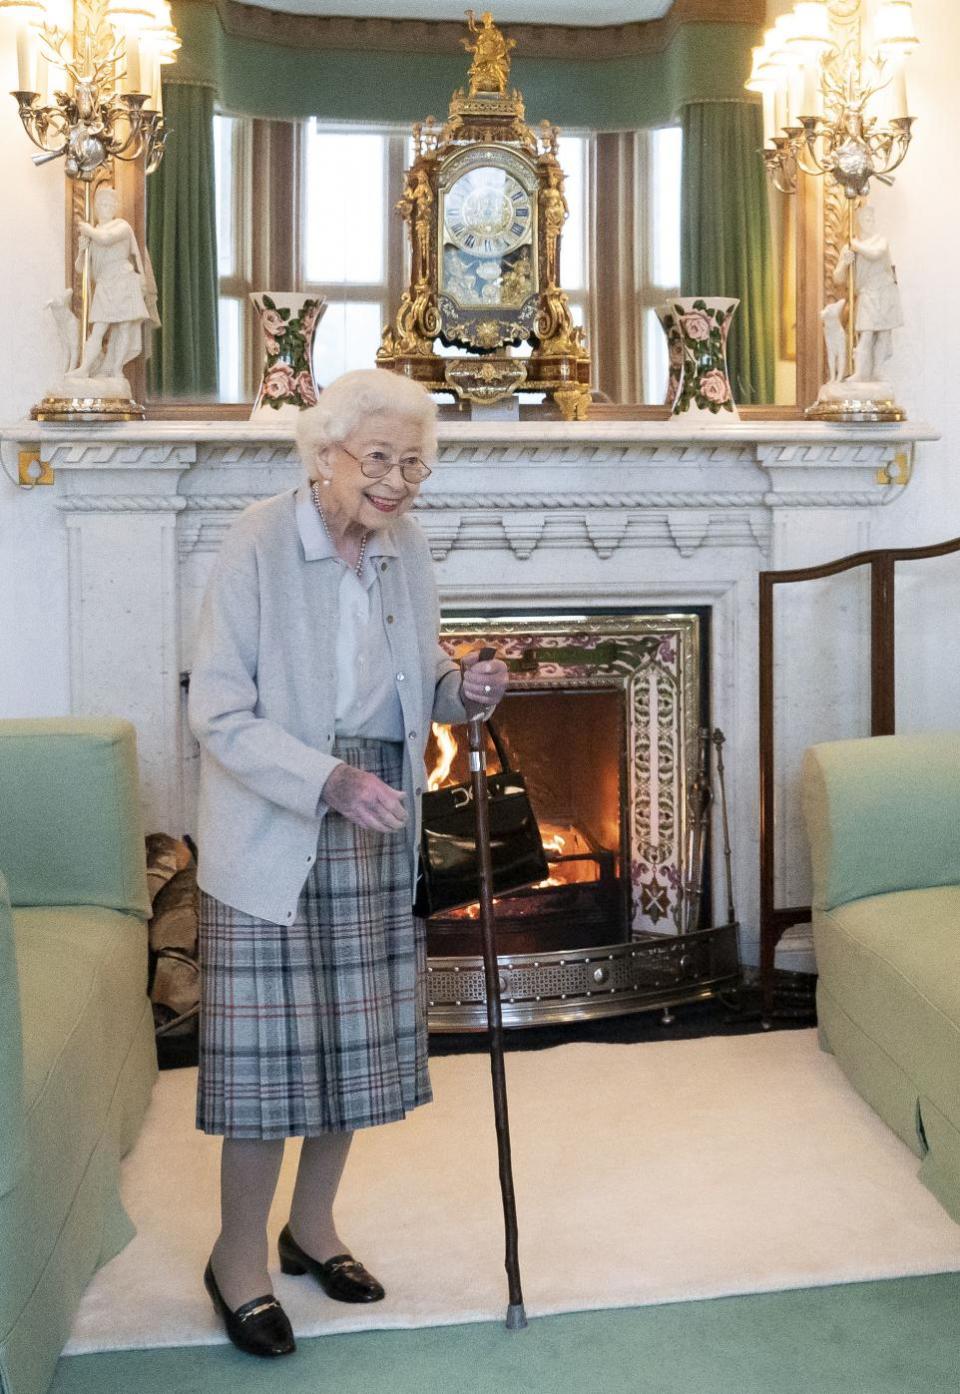 Eastern Daily Press: Queen Elizabeth II met with Liz Truss in Balmoral